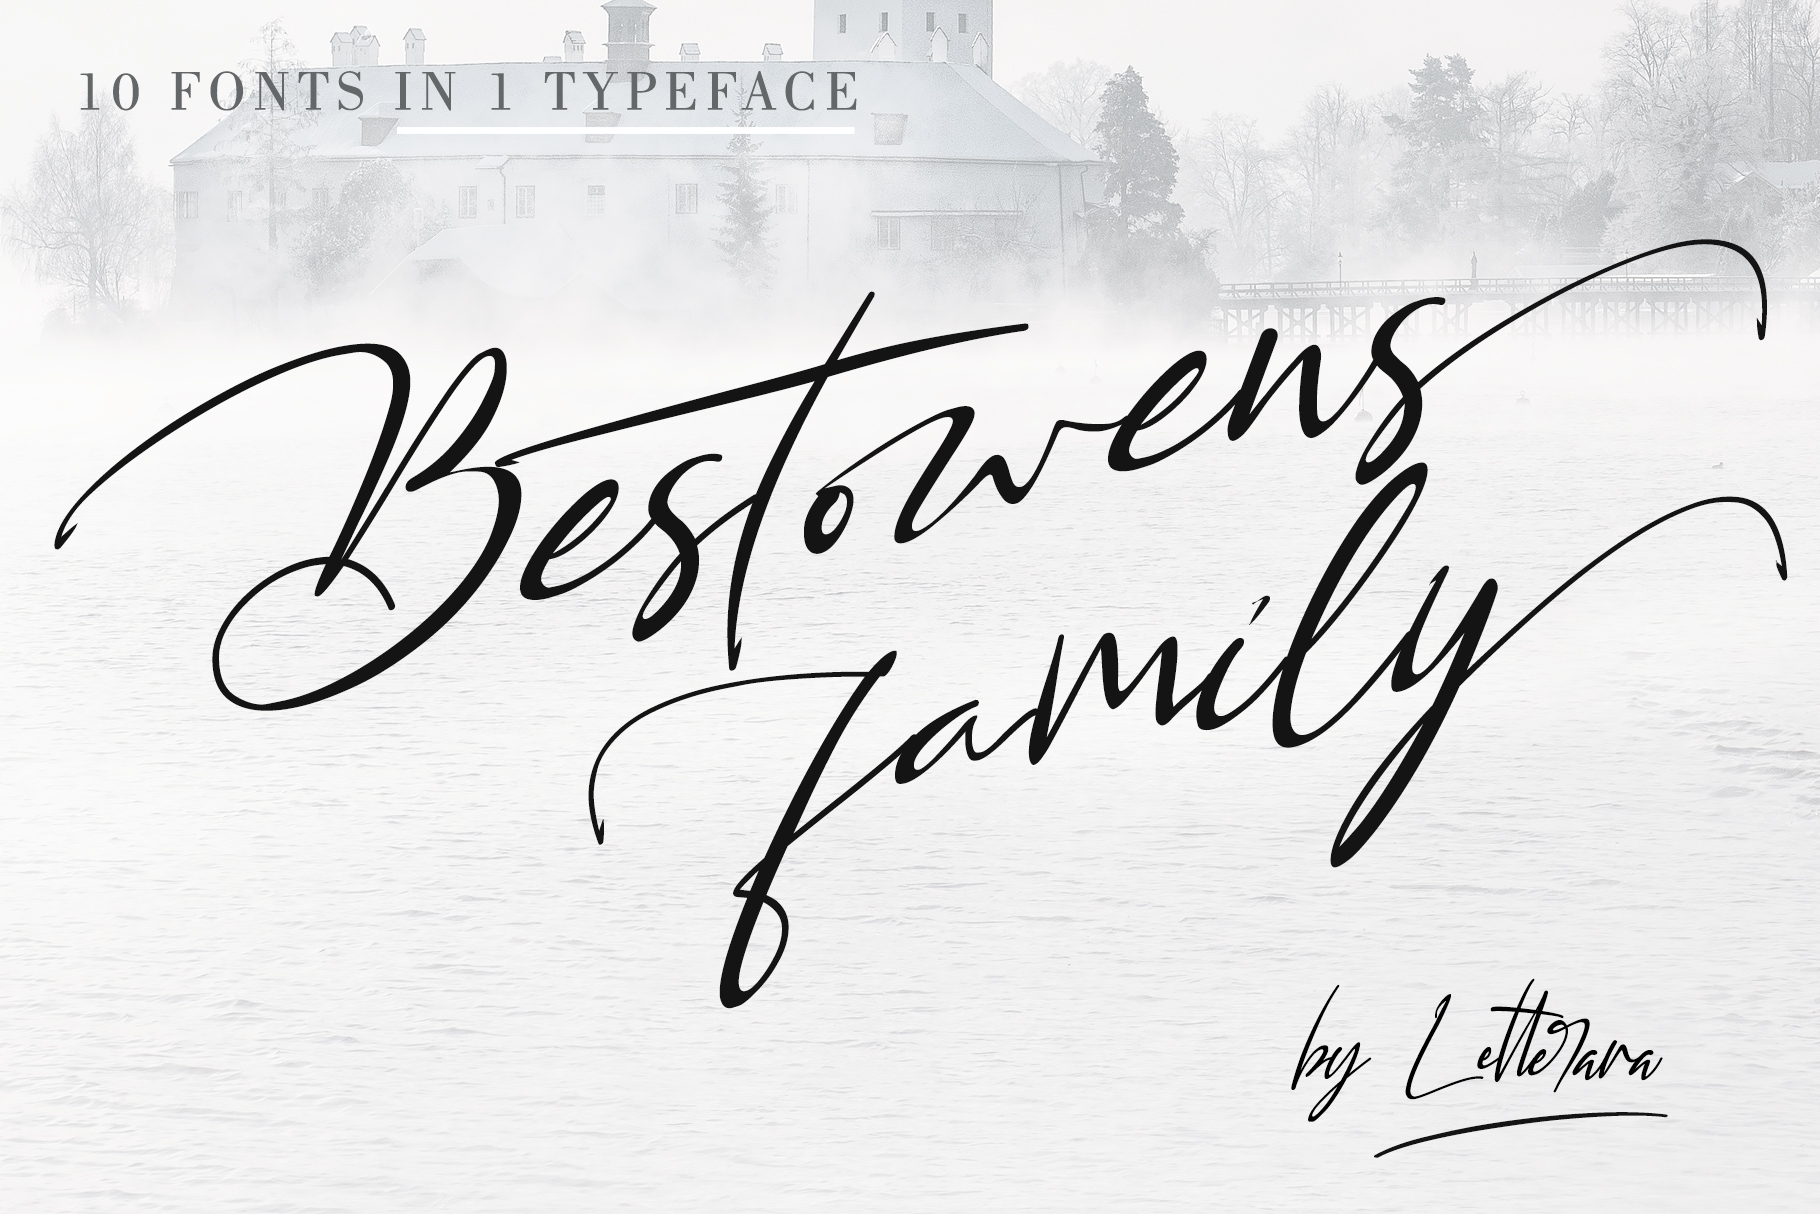 

Bestowens: An Elegant and Sweet Handwritten Font